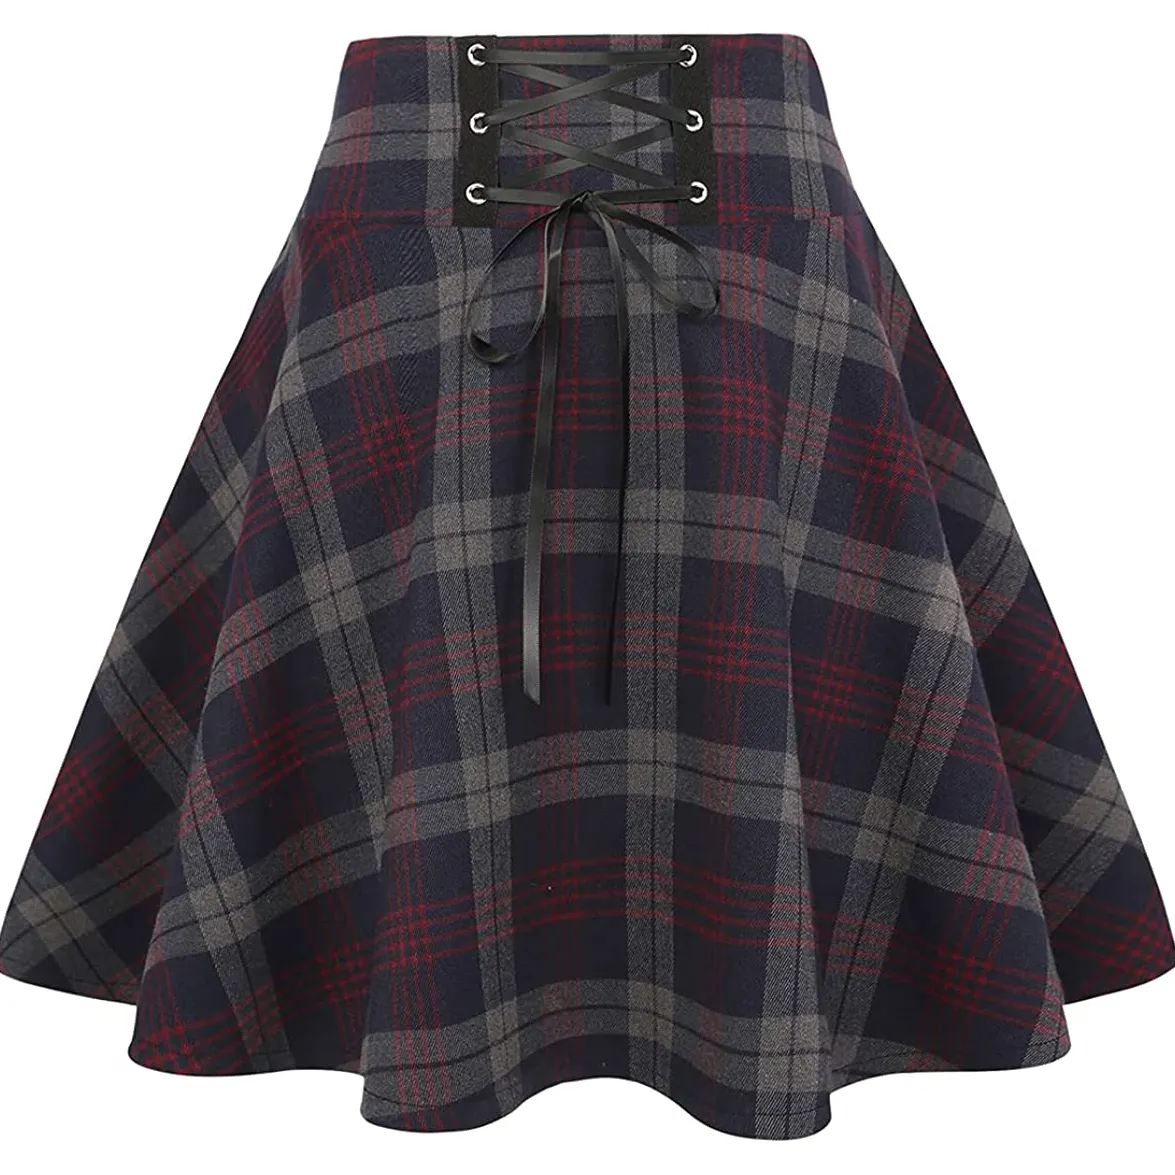 Homespun-falda escocesa Mini falda escocesa, banda de uniforme de todas las tallas con 2 correas de cuero con hebilla, falda escocesa